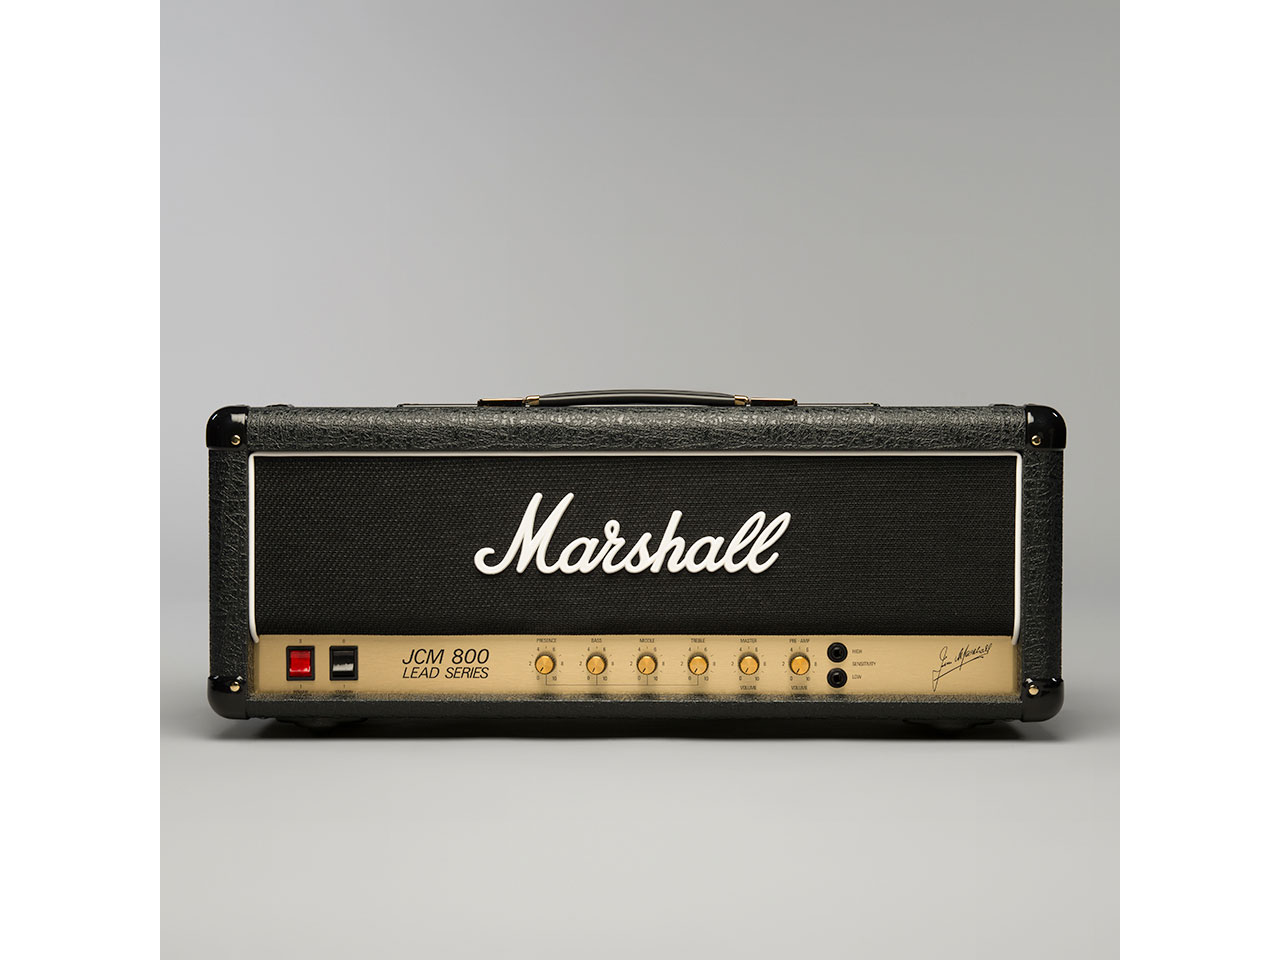 Marshall(マーシャル) JCM800 2203 (ヘッドアンプ)